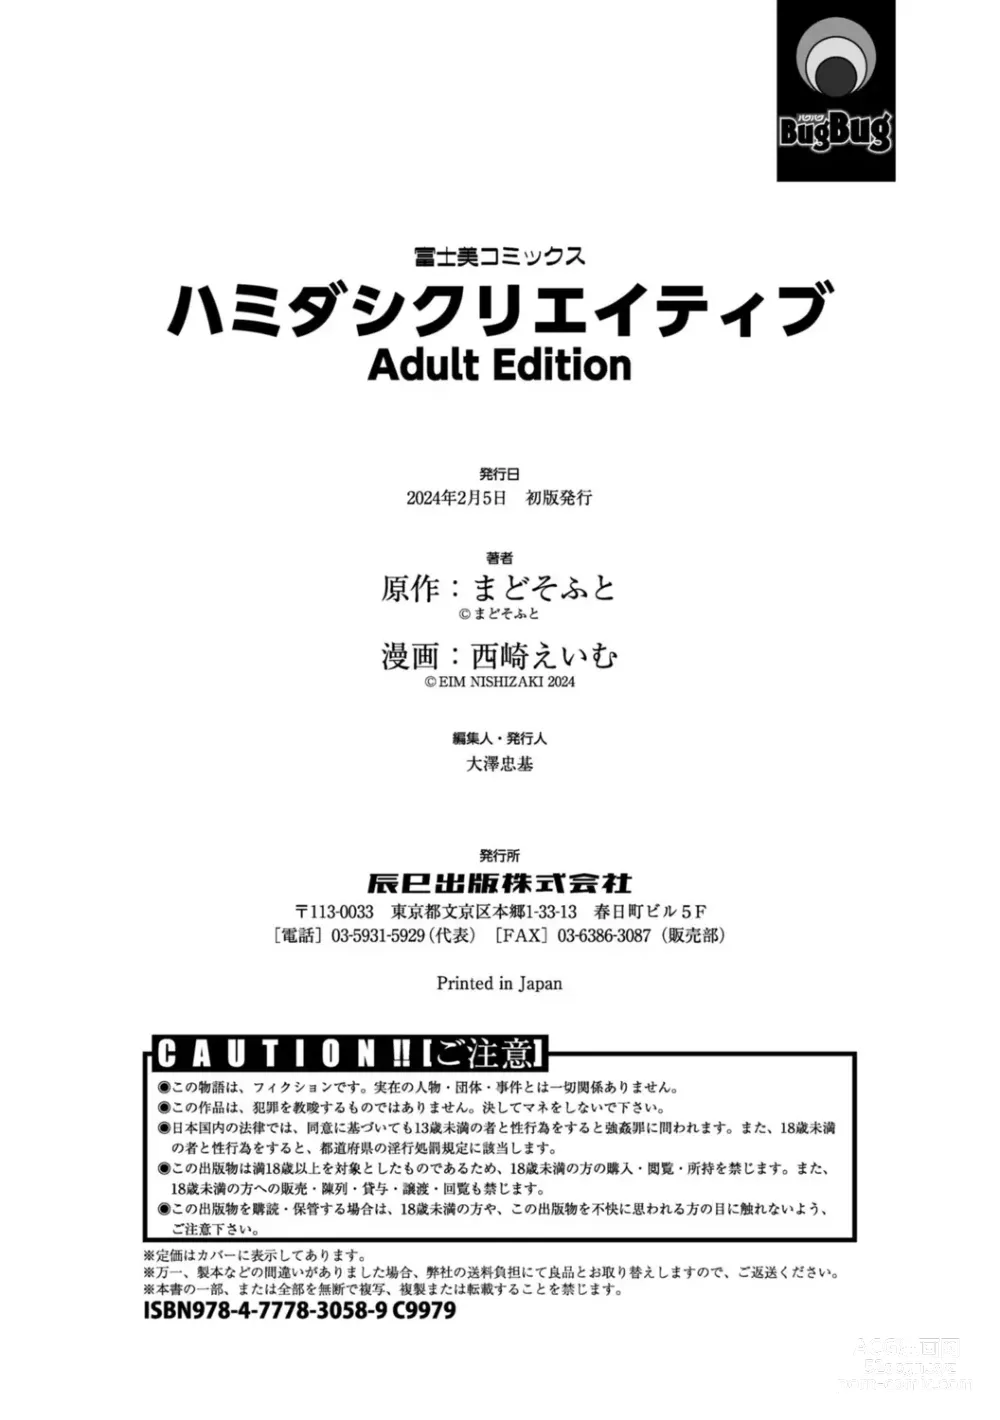 Page 214 of manga Hamidashi Creative Adult Edition